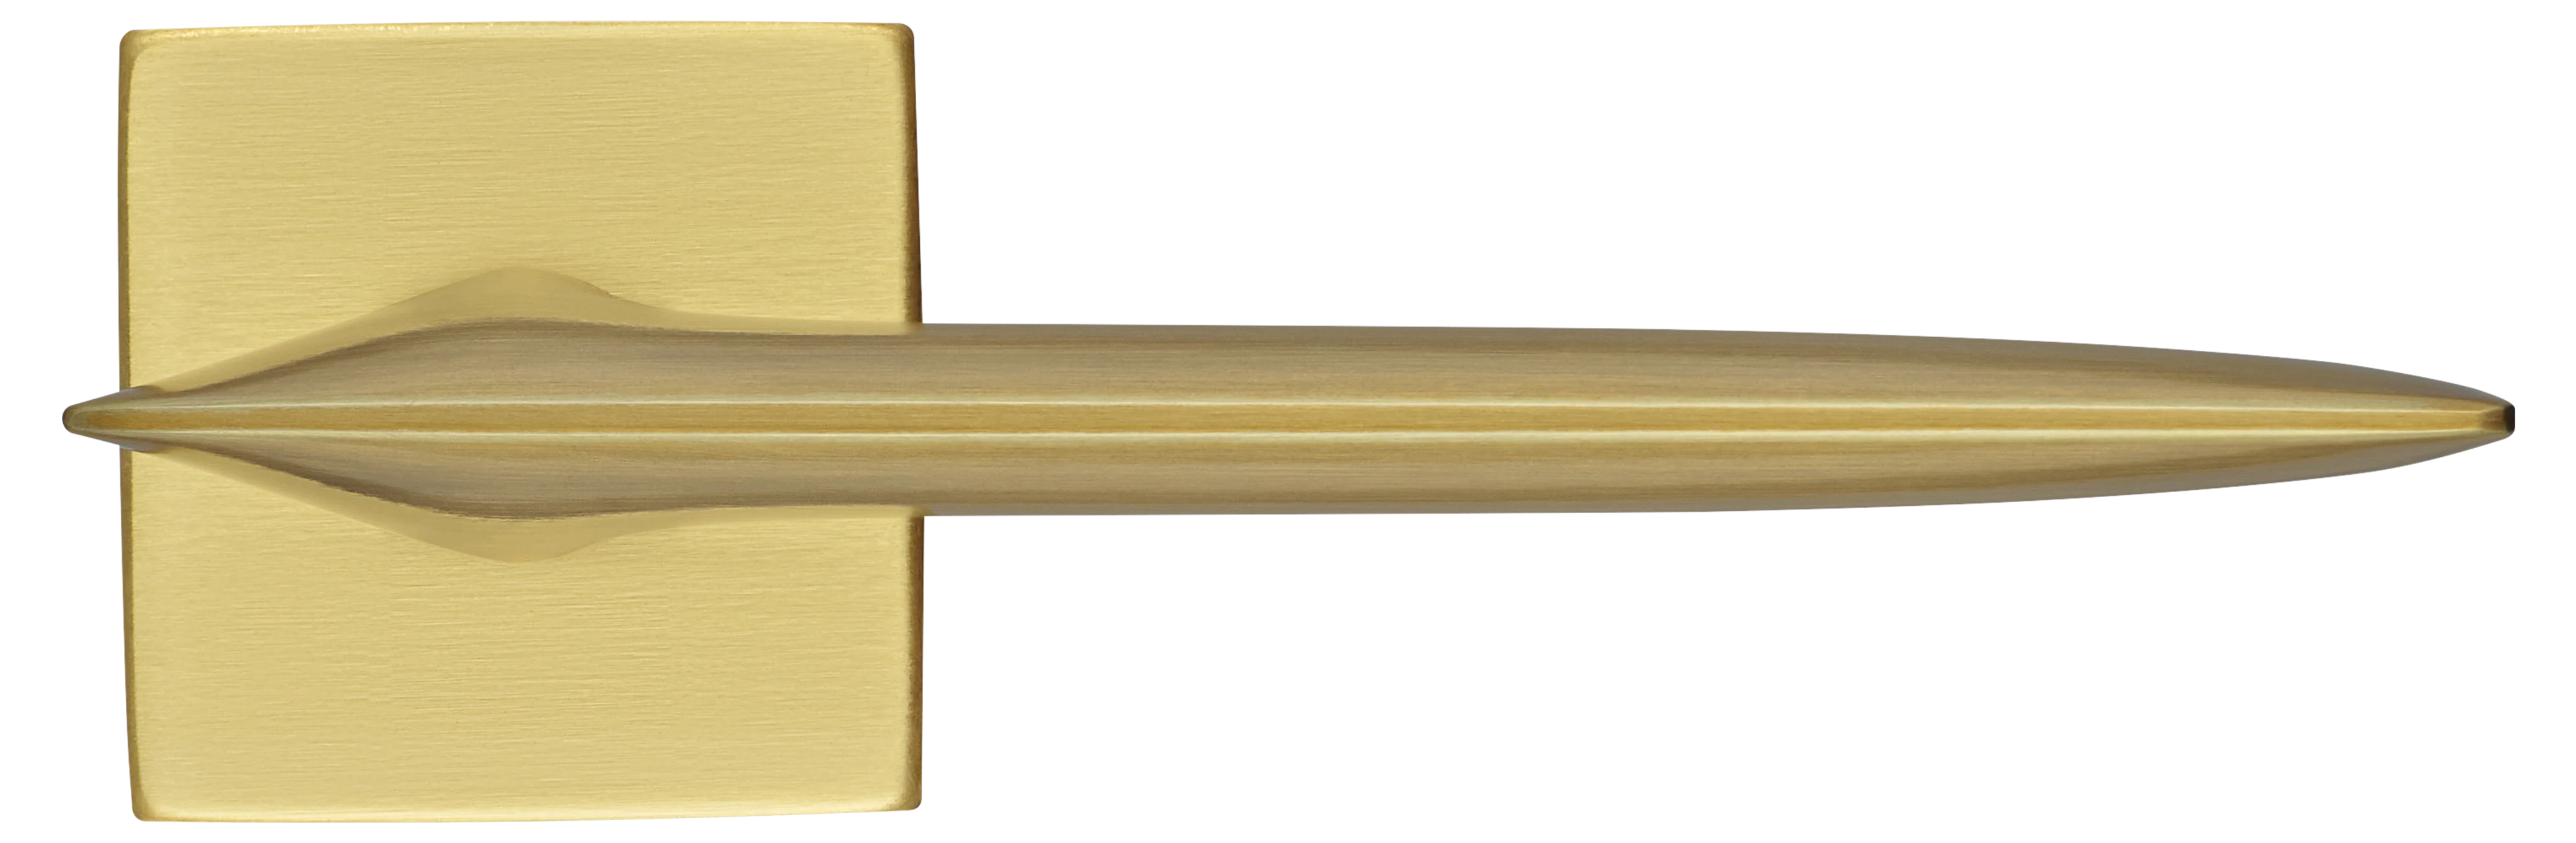 GALACTIC S5 OSA, ручка дверная, цвет -  матовое золото фото купить в Твери